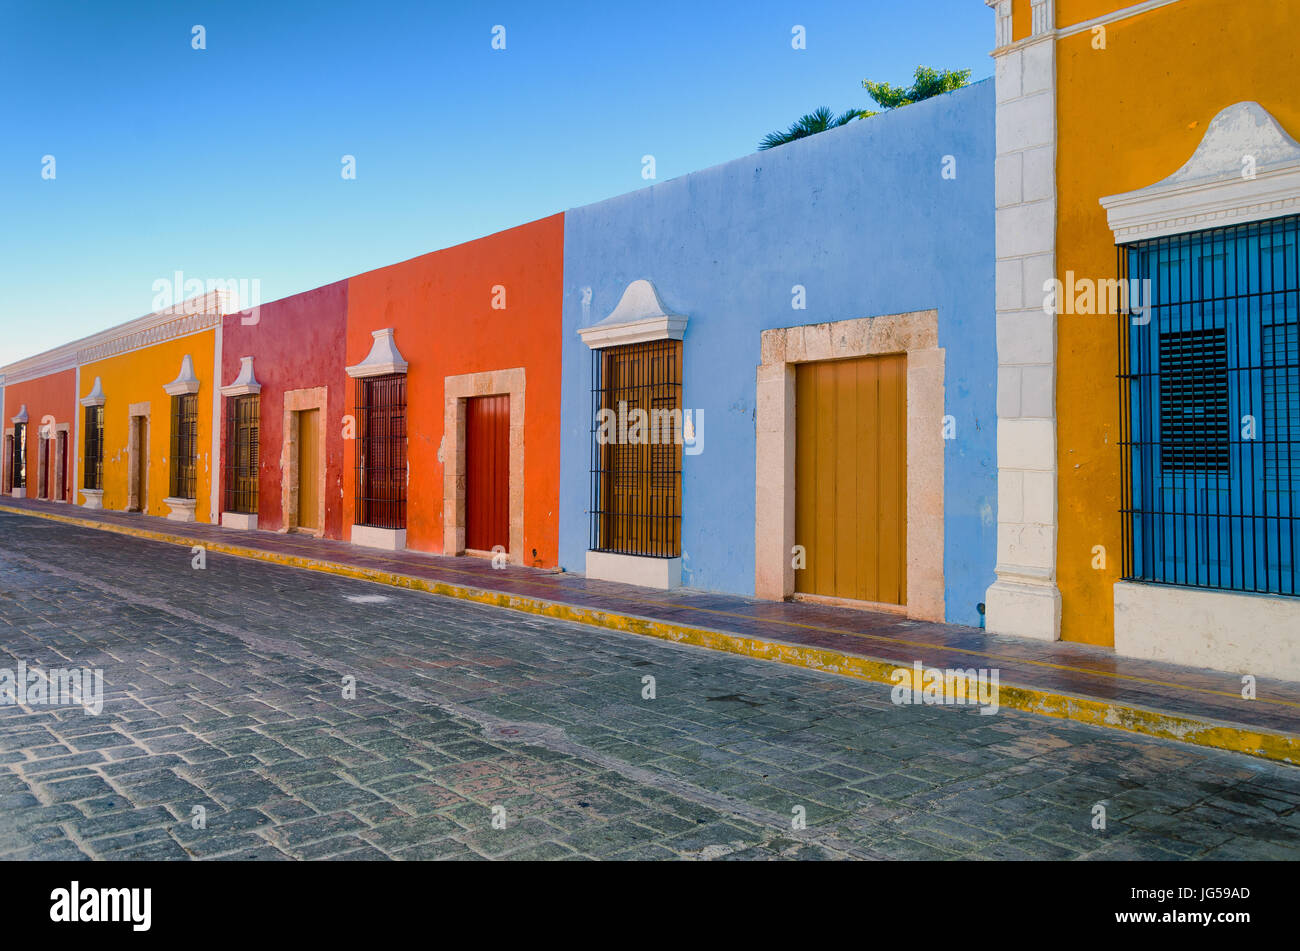 Helle Farben in Häusern im Kolonialstil in der Innenstadt von Campeche, Mexiko. Stockfoto